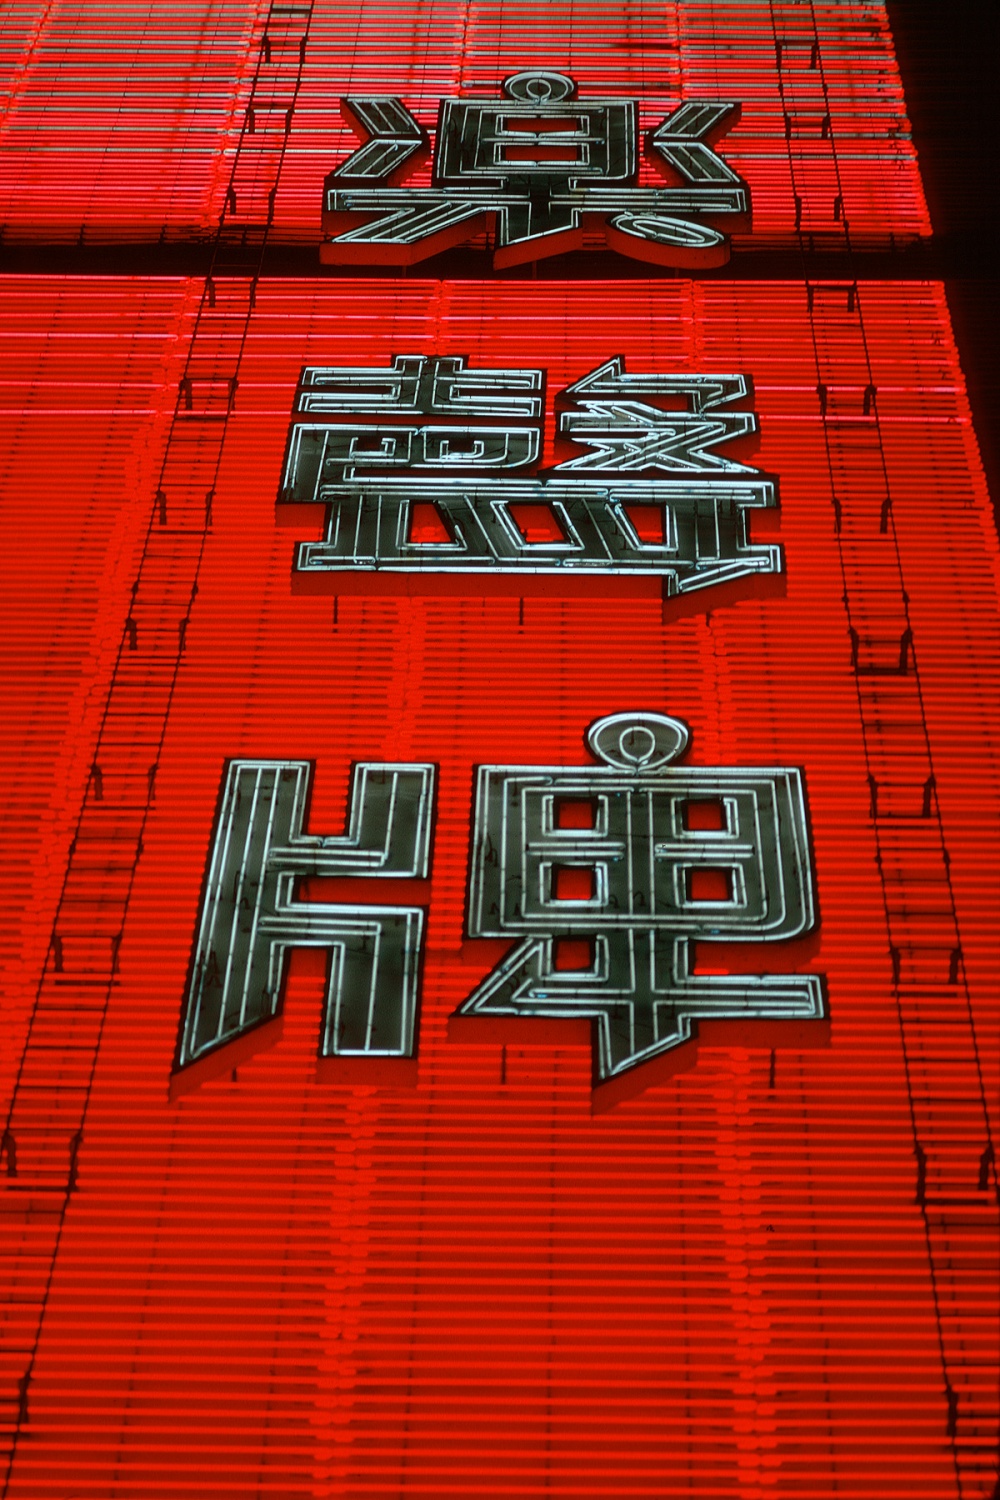 bill-hocker-nathan-road-kowloon-hong-kong-1974